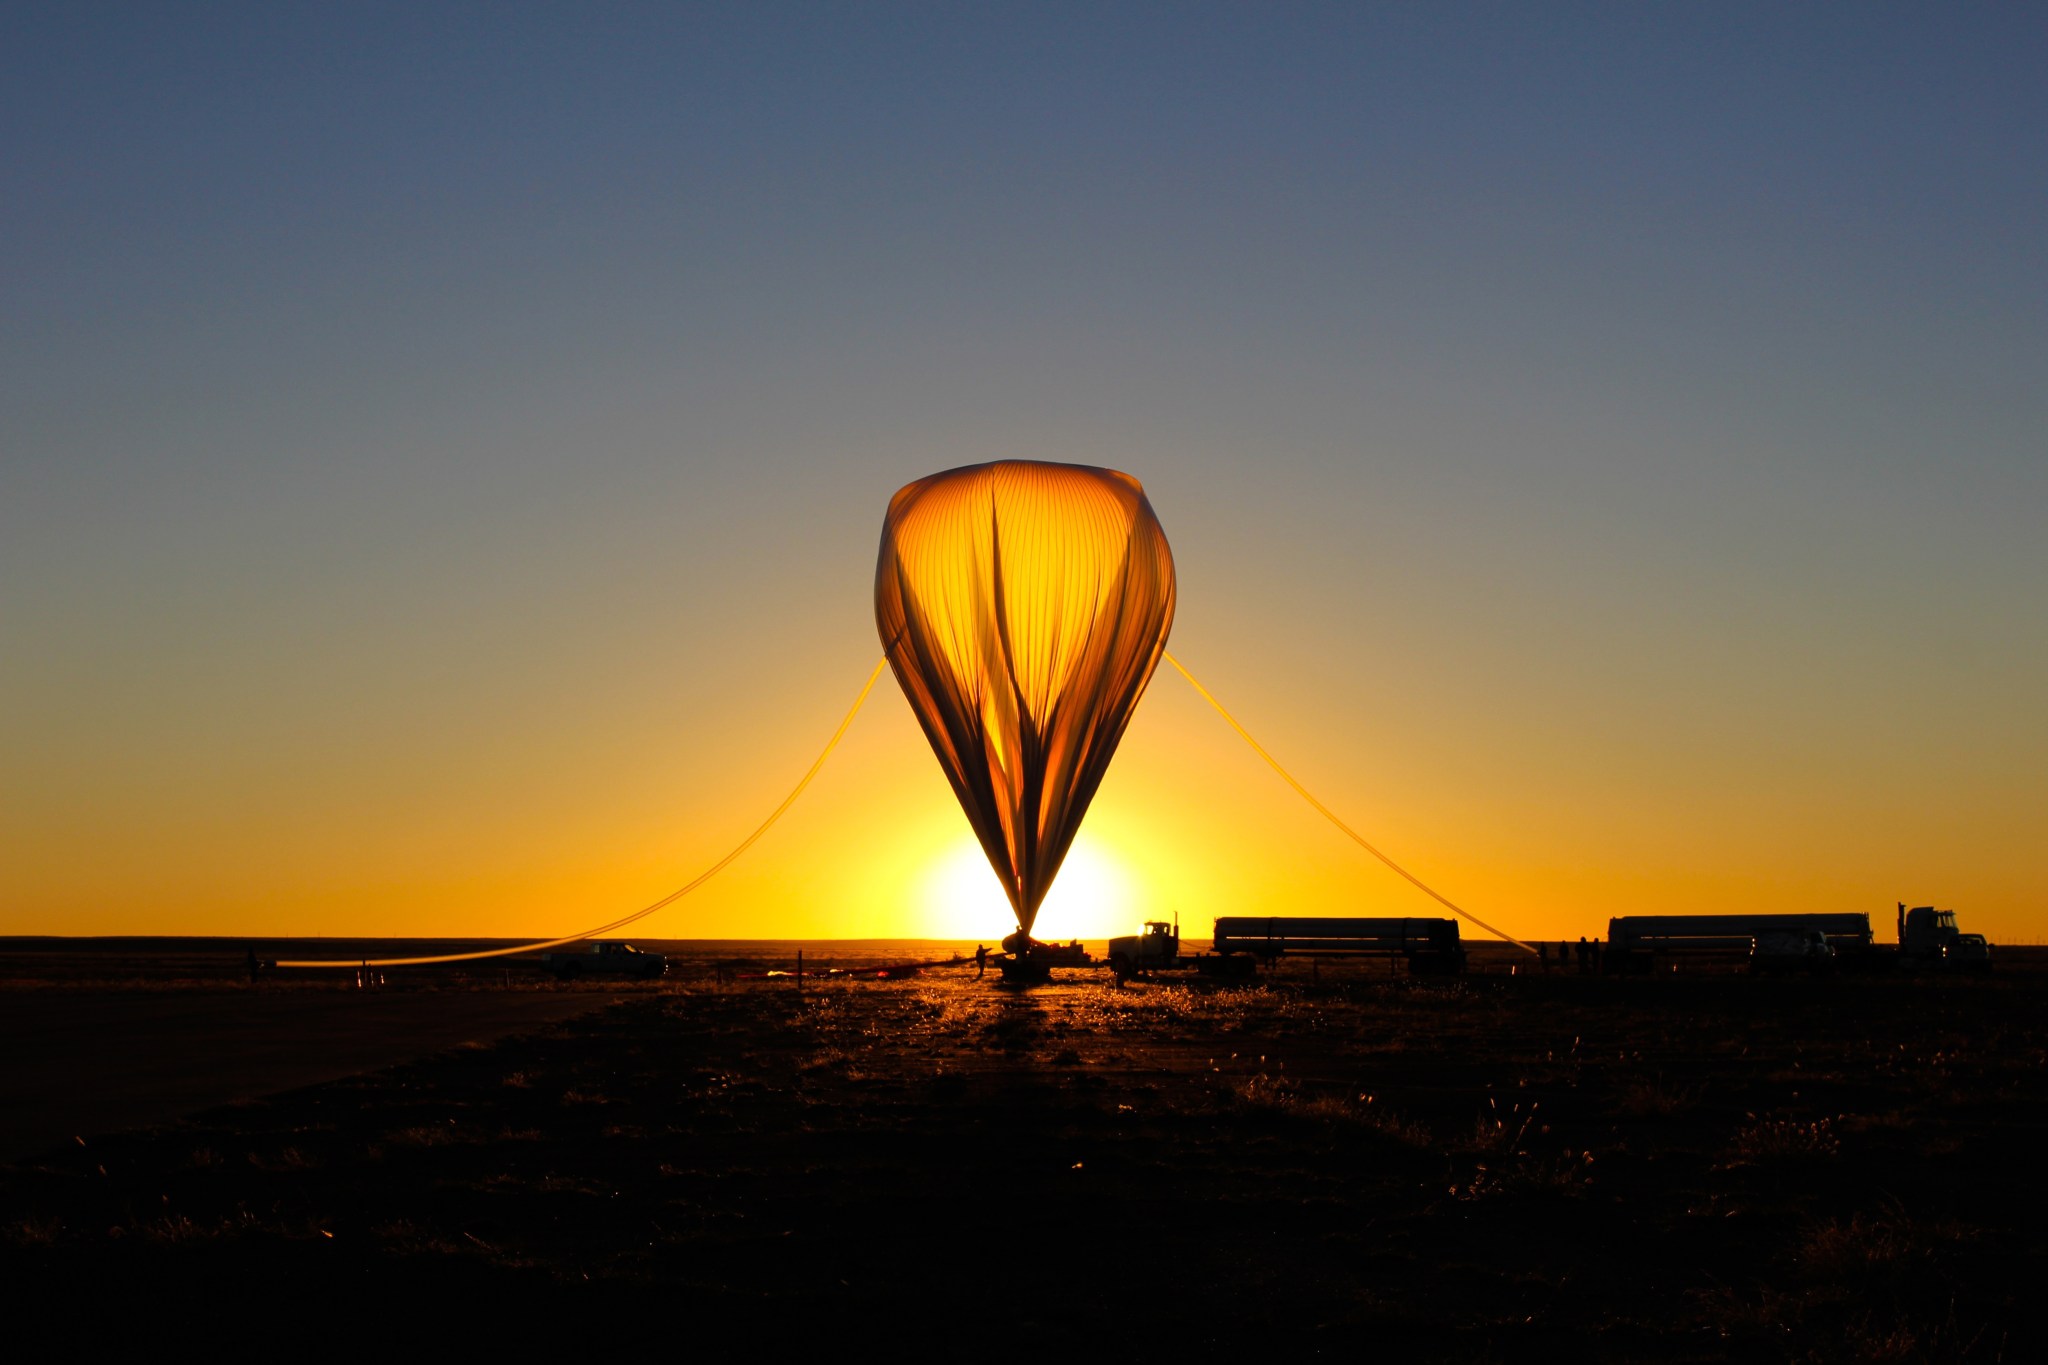 Balloon launch at dawn.